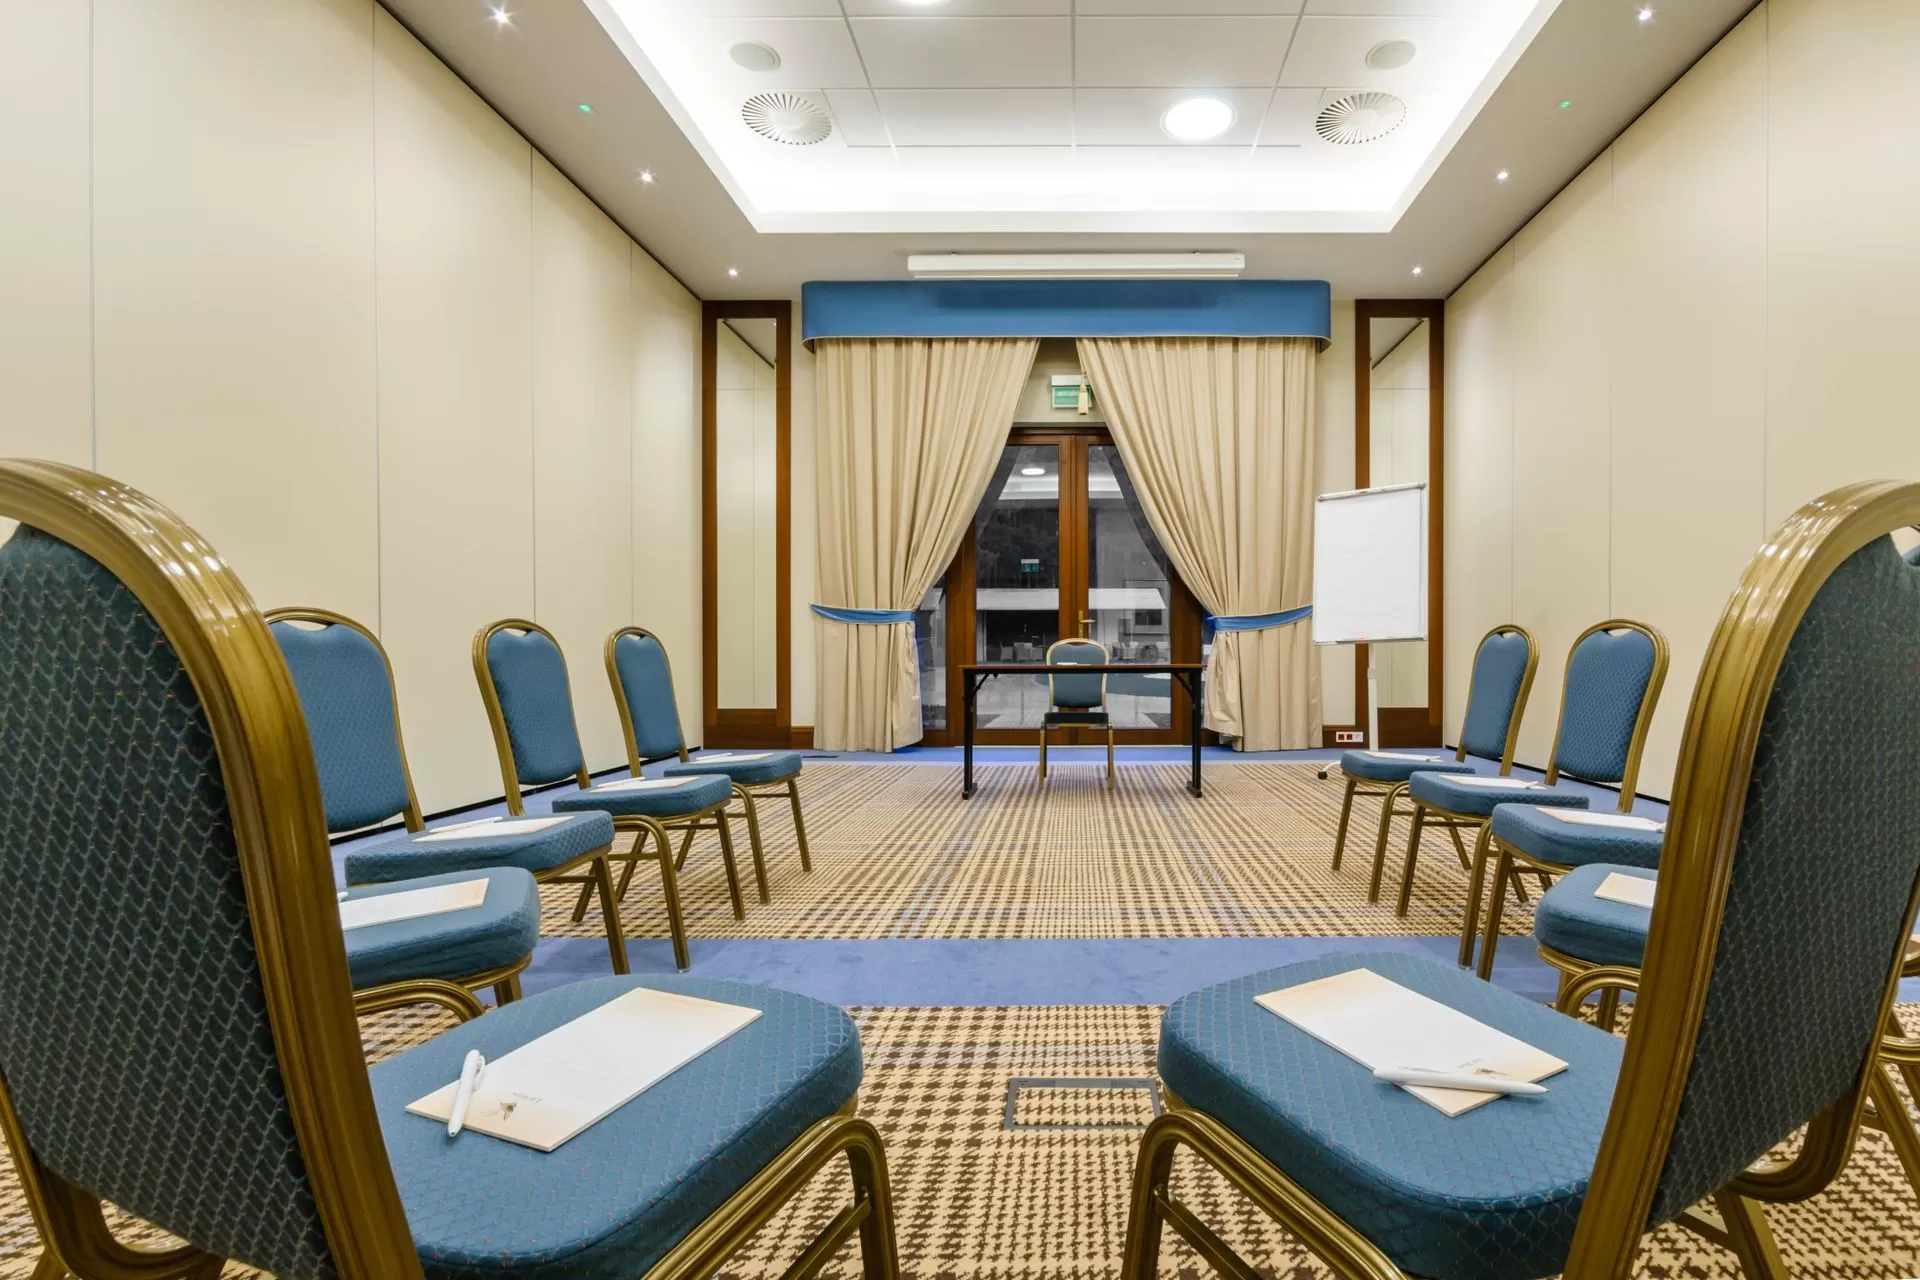 Jak wyposażone są sale konferencyjne w Hotelu Las Woda?